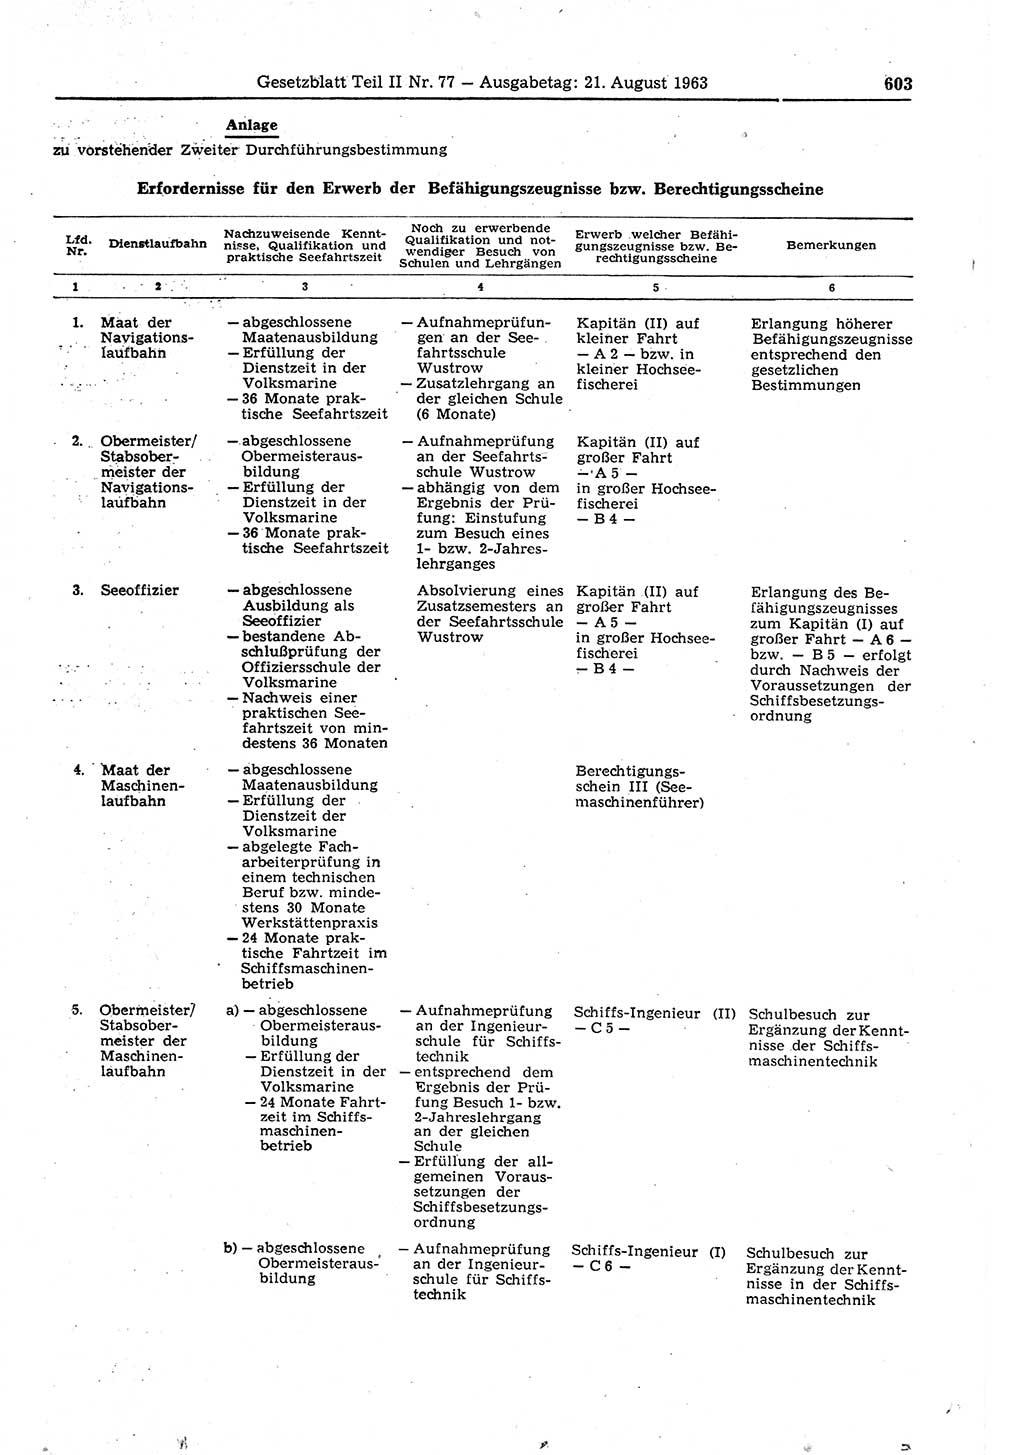 Gesetzblatt (GBl.) der Deutschen Demokratischen Republik (DDR) Teil ⅠⅠ 1963, Seite 603 (GBl. DDR ⅠⅠ 1963, S. 603)